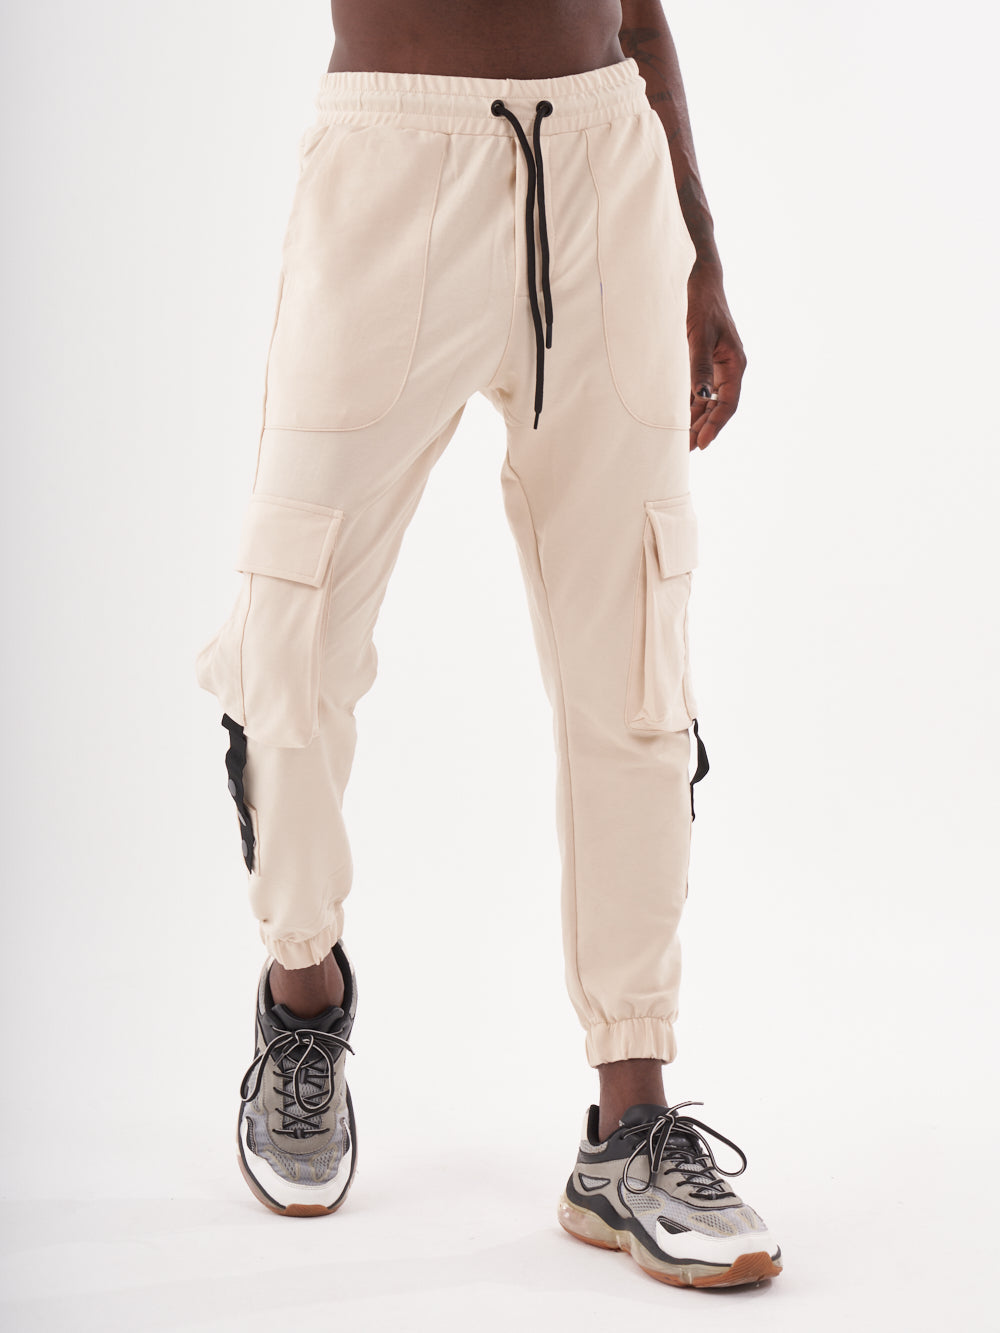 Streetwear SERNES Joggers for & - Style Men Sweatpants